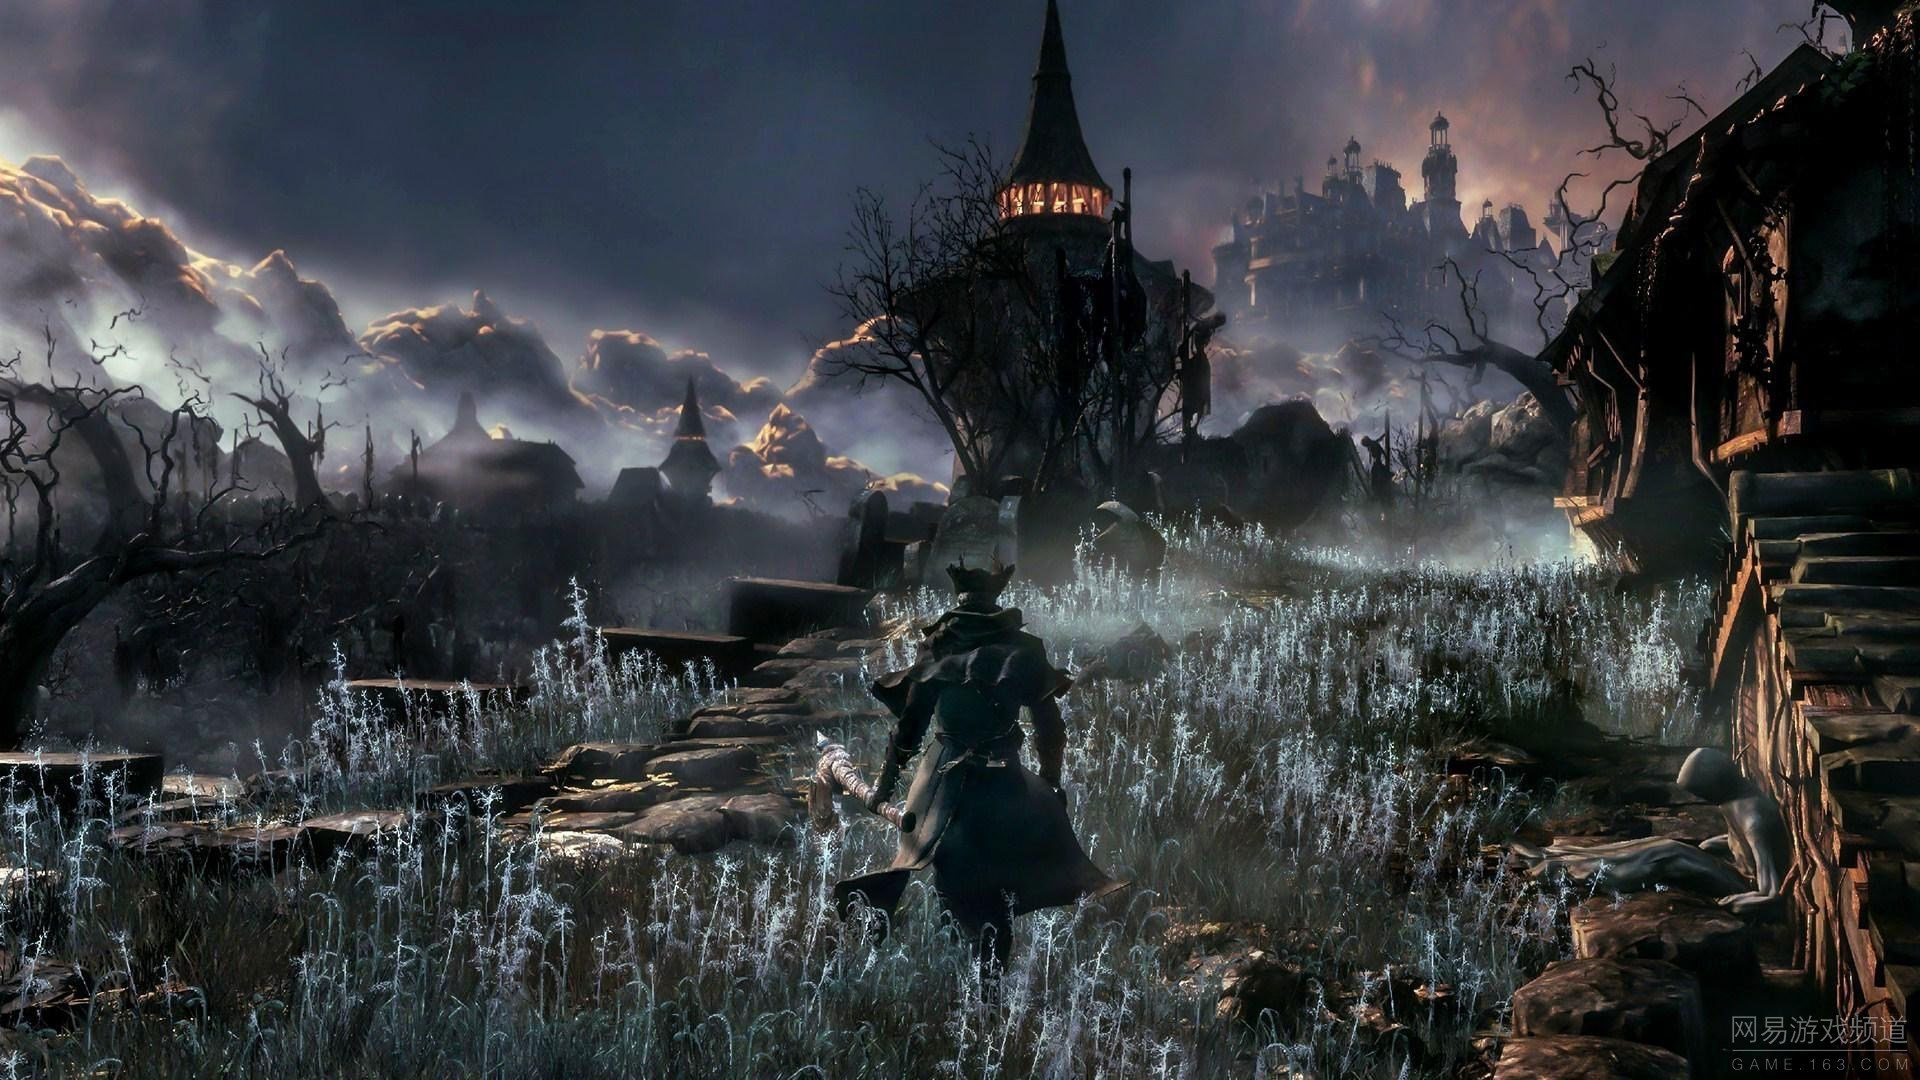 Dark Souls III Wallpapers in Ultra HD | 4K - Gameranx